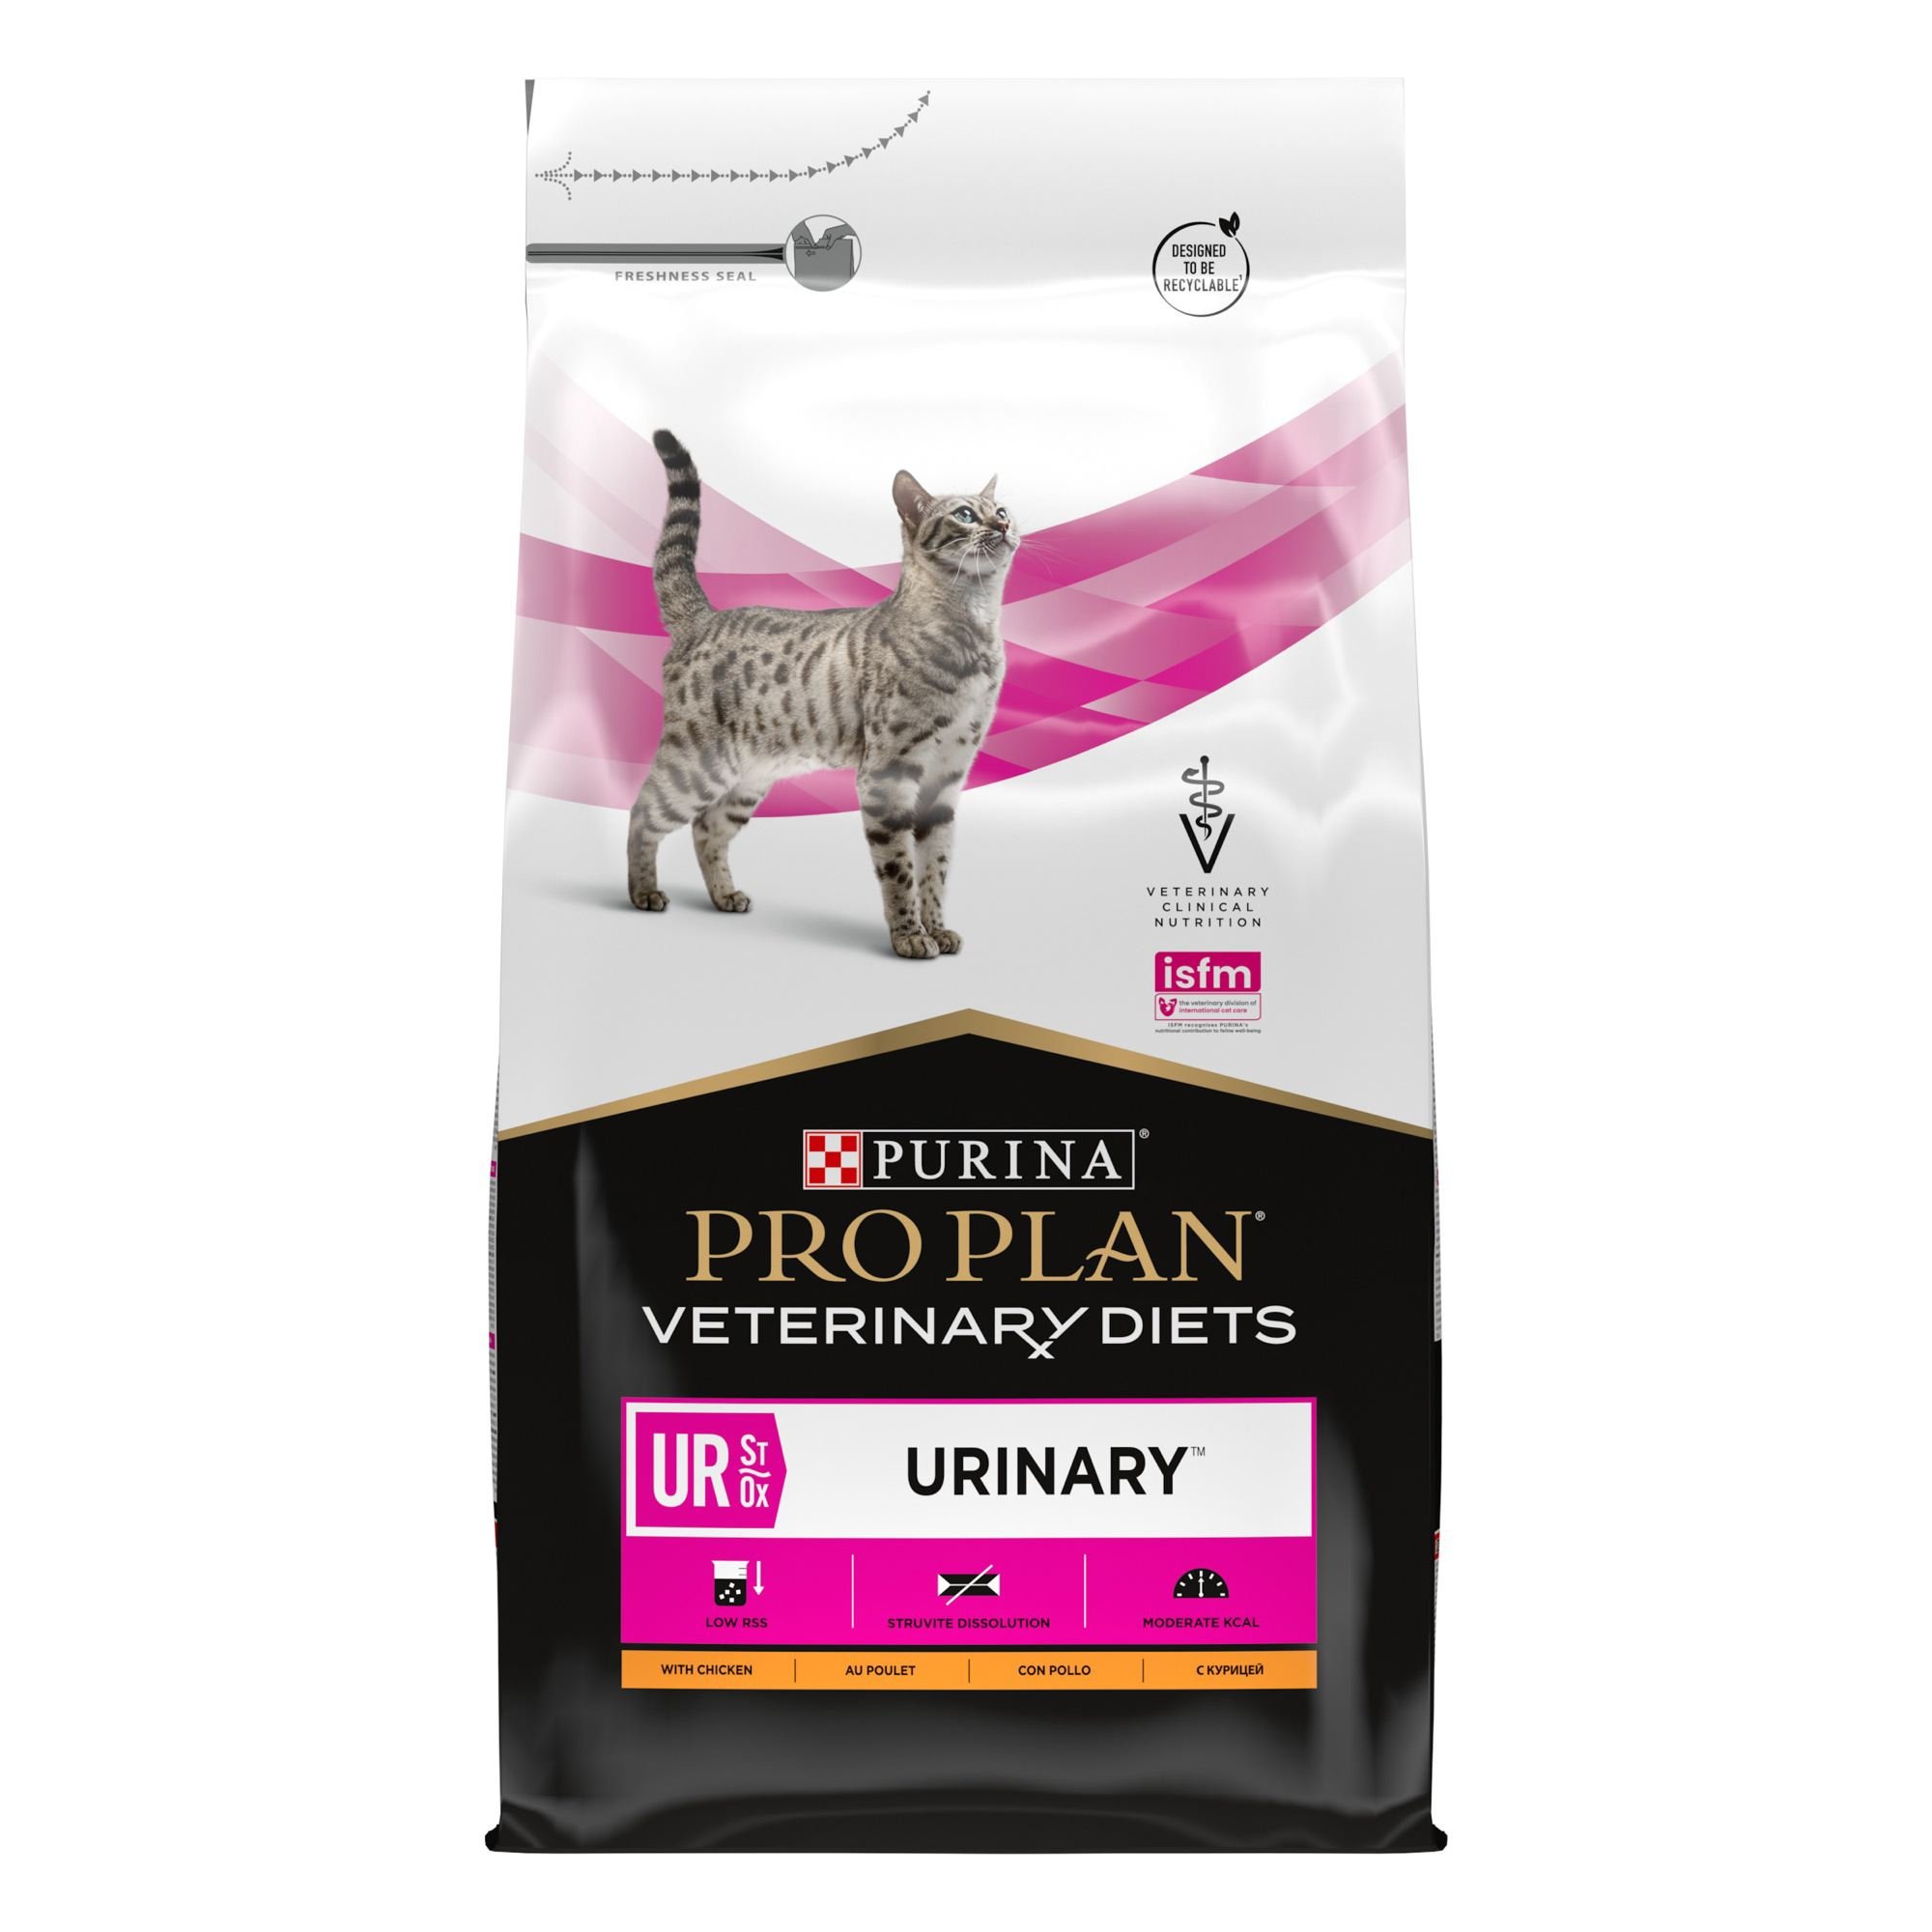 Сухой корм для кошек Purina Pro Plan Veterinary Diets UR Urinary, с курицей, 5 кг - фото 1